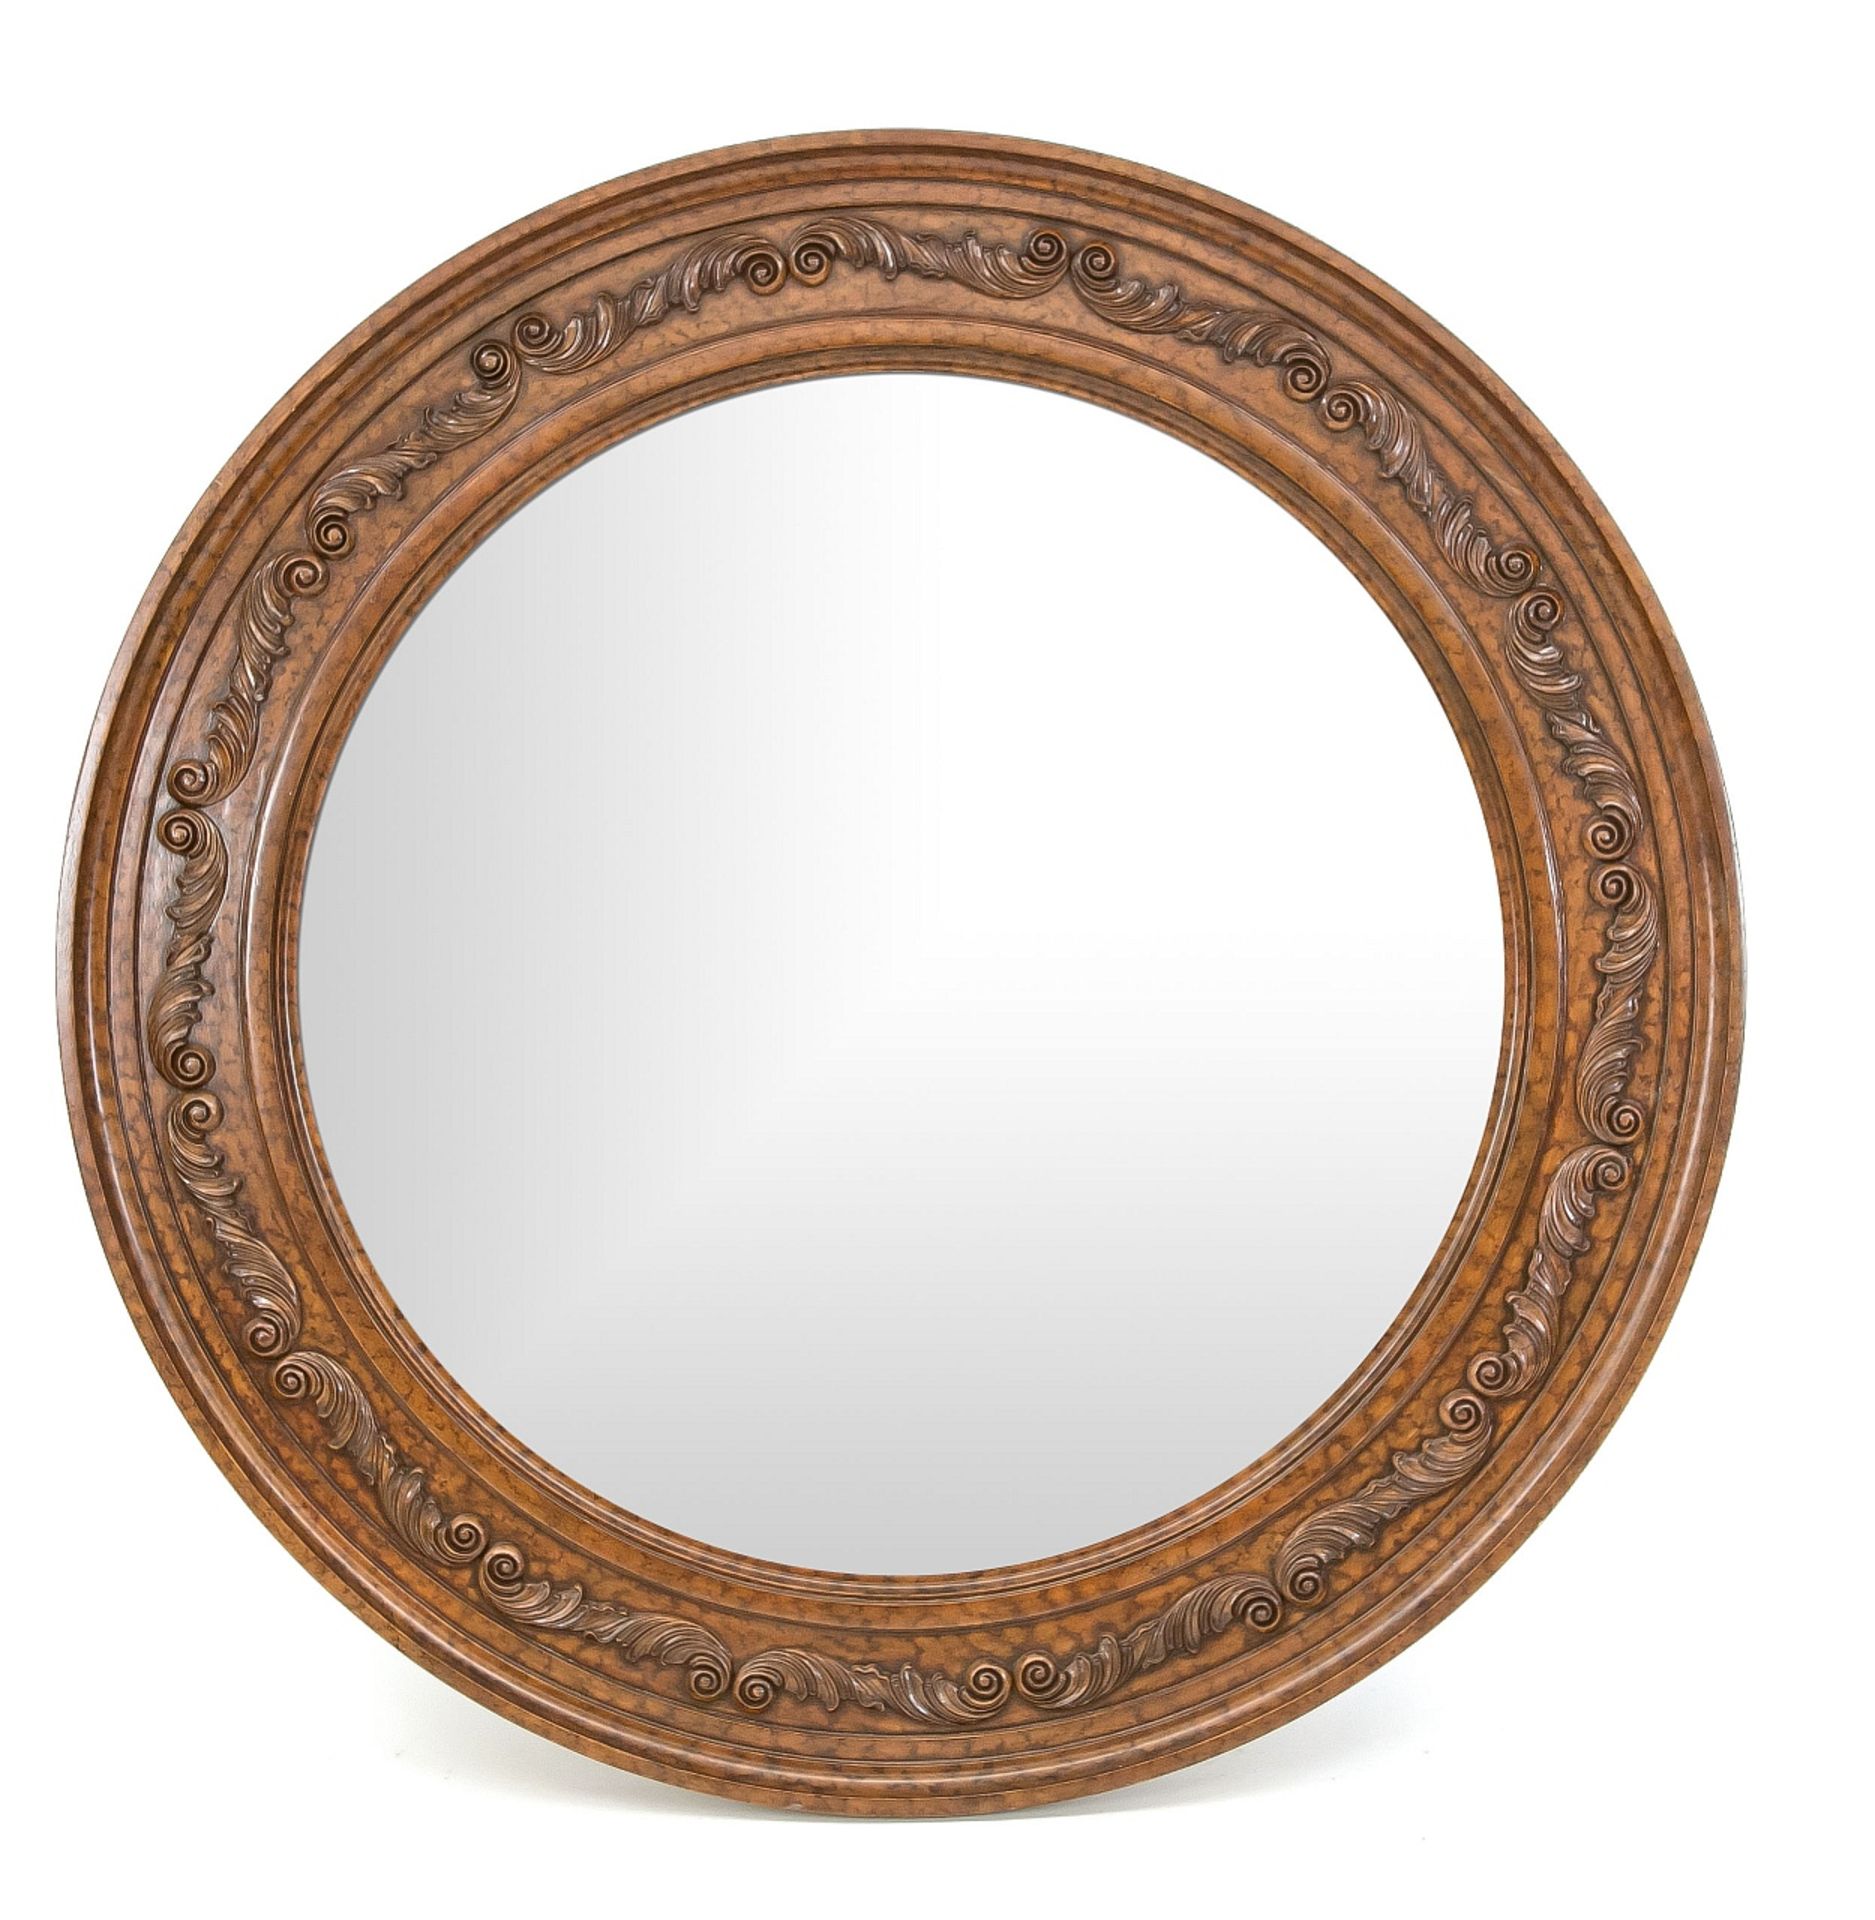 Large round mirror Ø 138 cm.